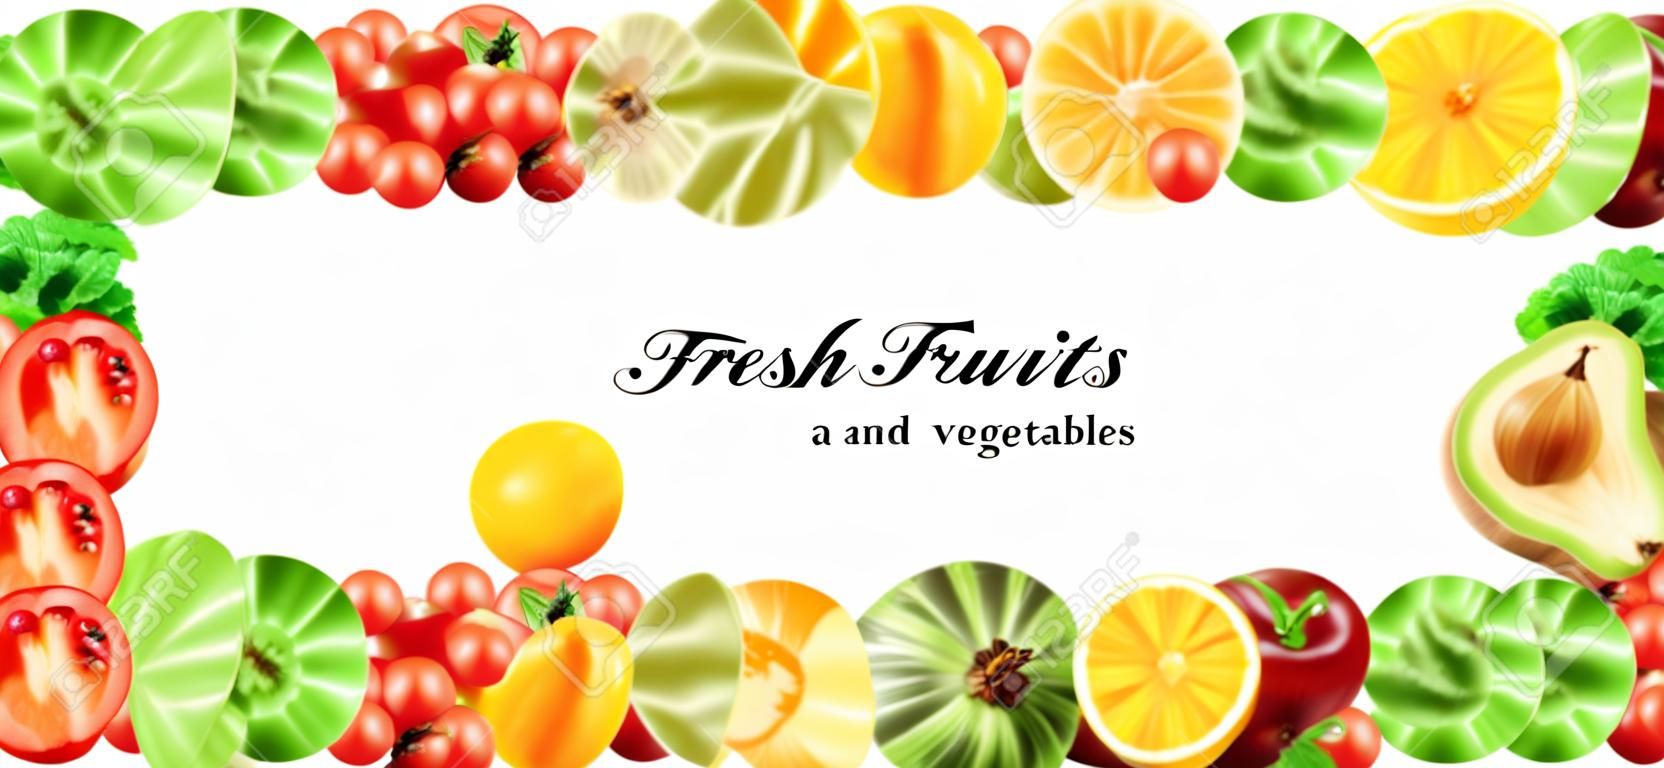 Frutas e legumes frescos. Conceito de comida saudável